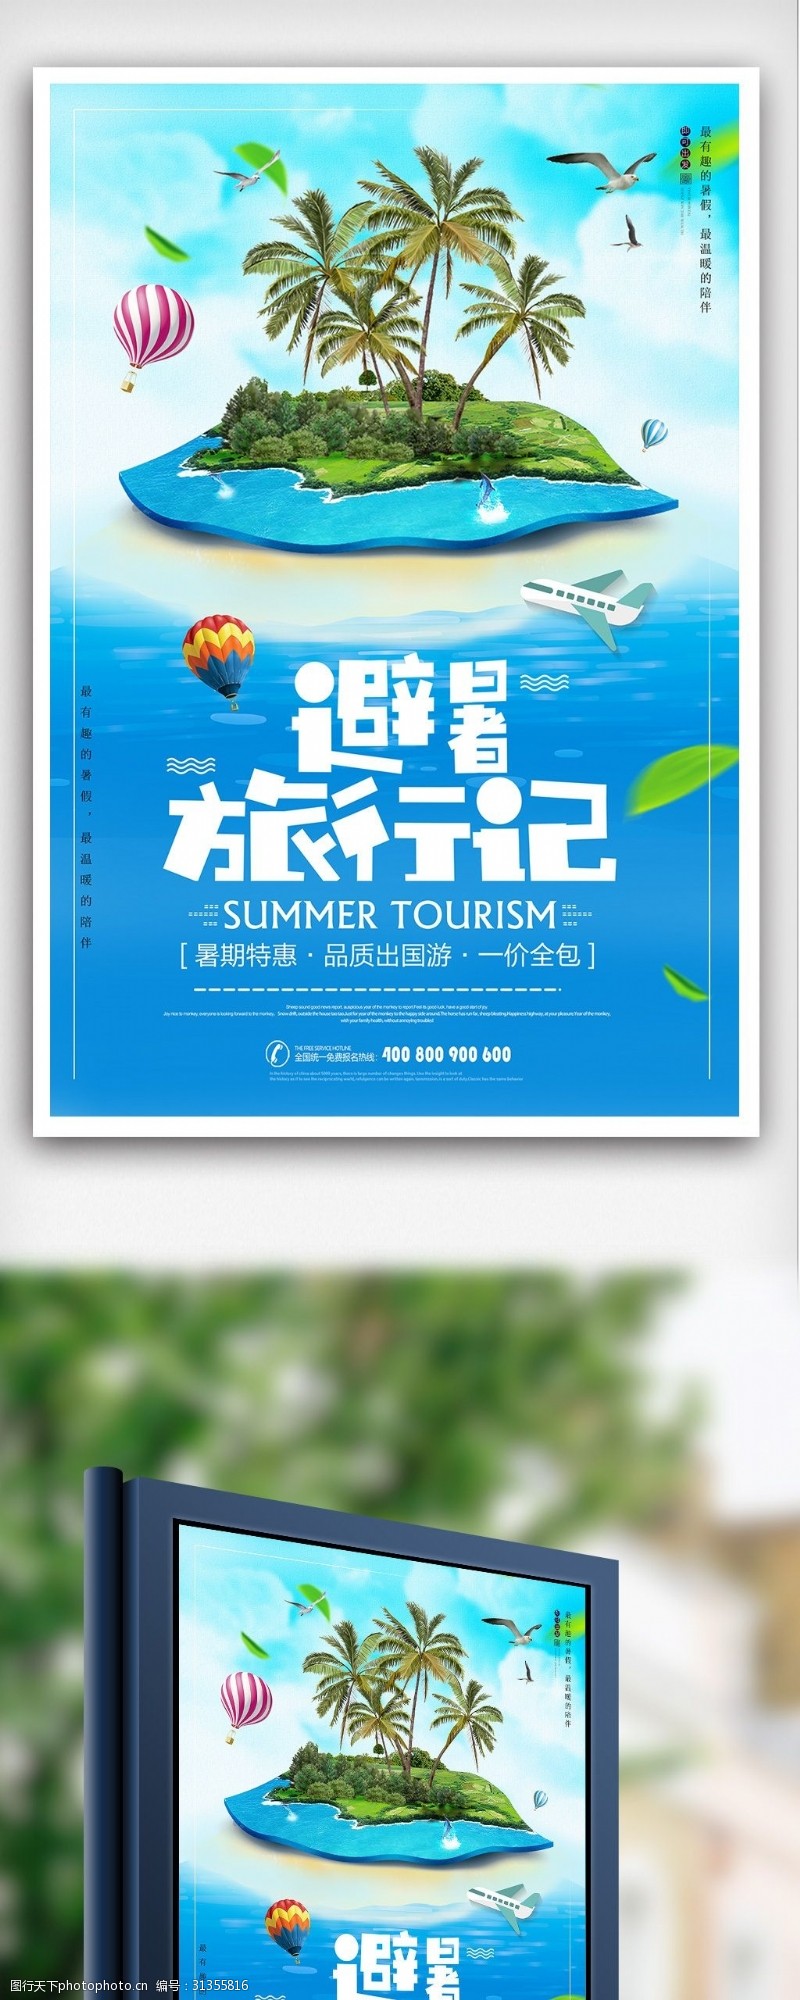 毕业旅行暑假避暑旅行海报